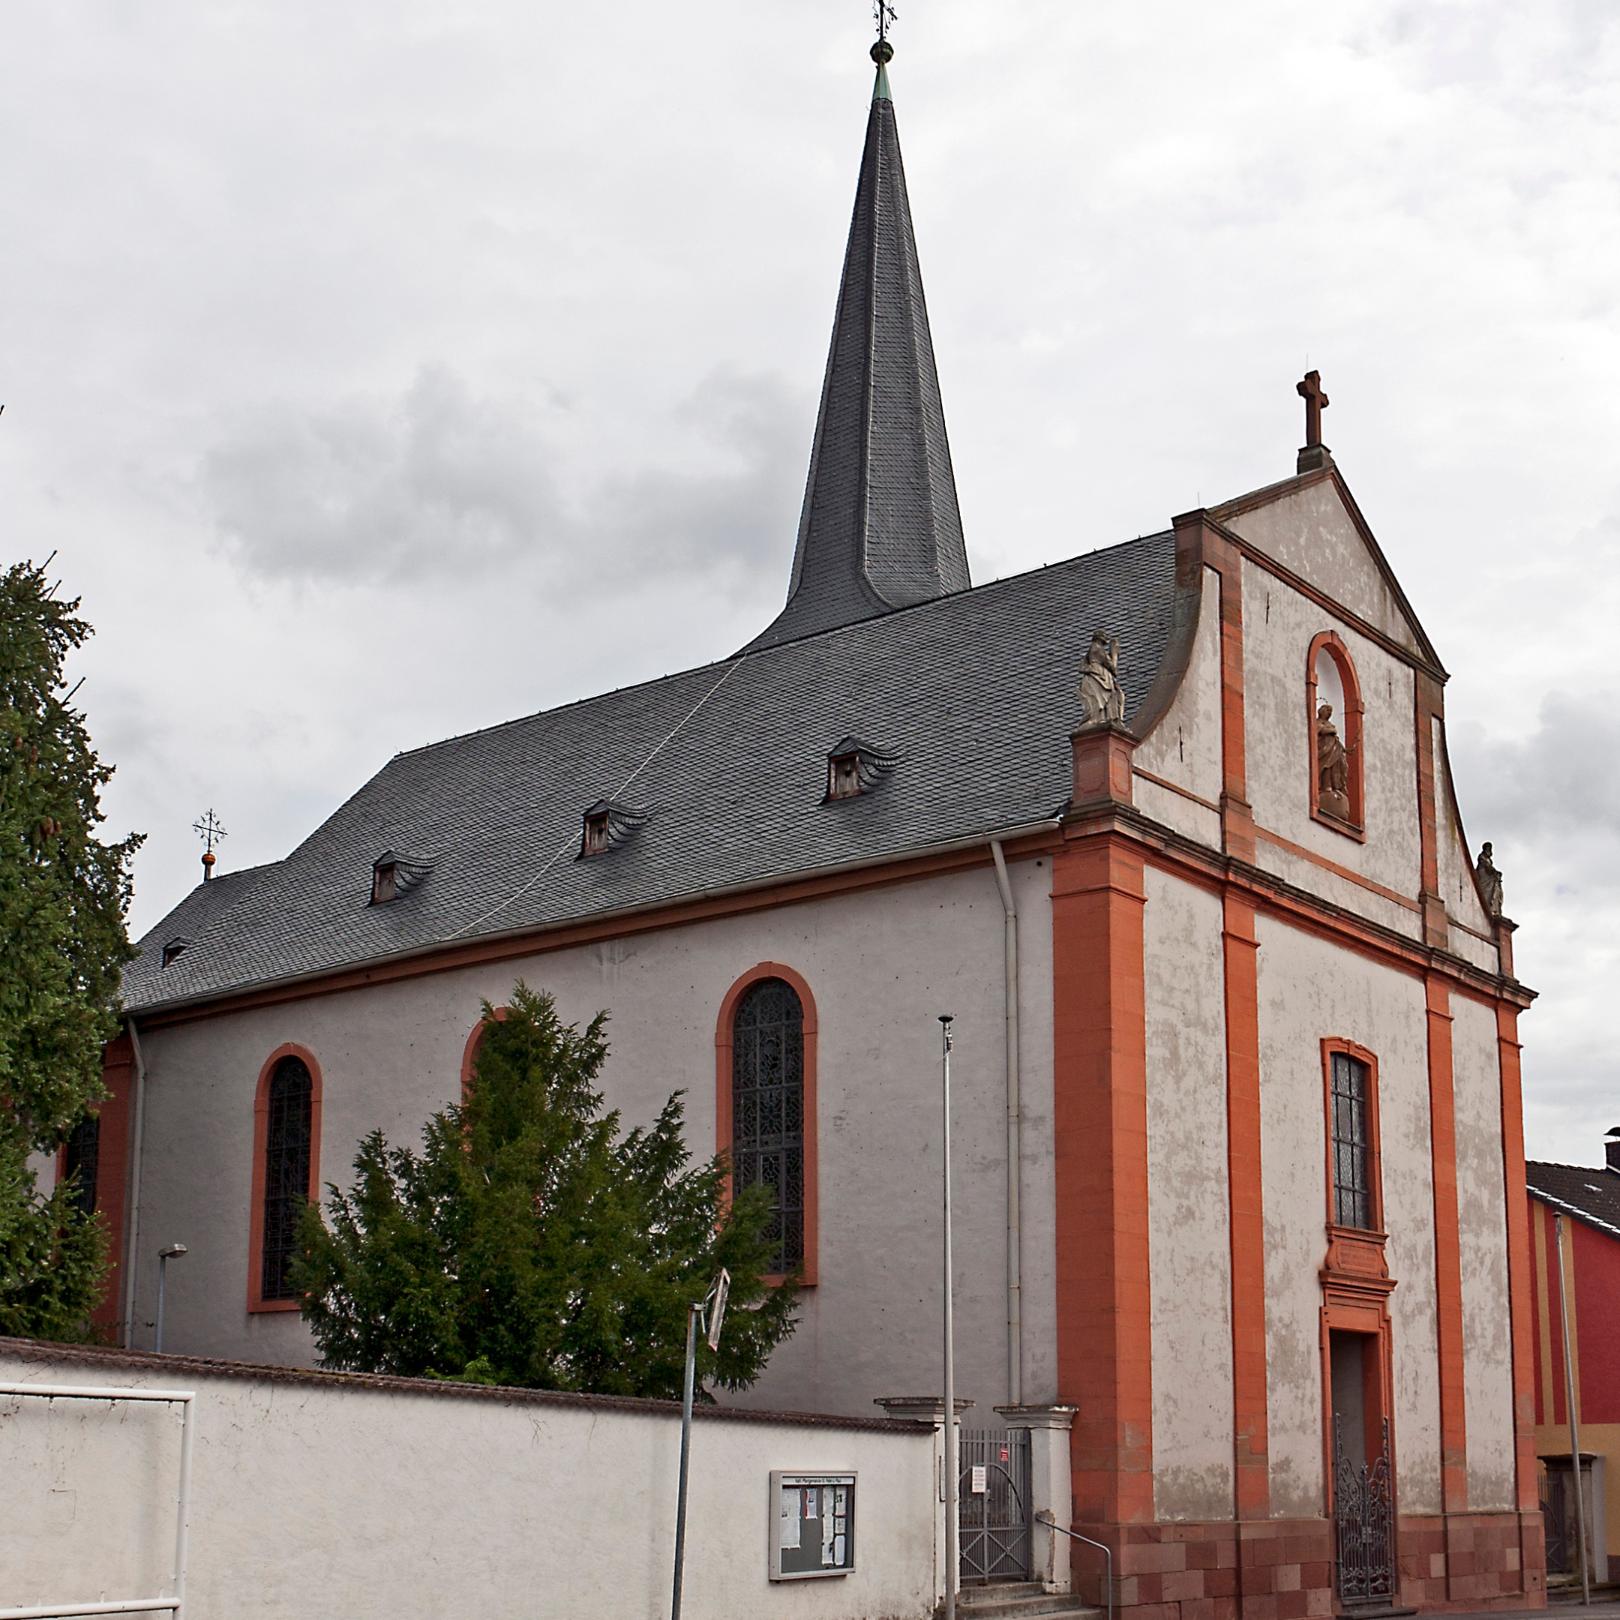 Katholische Kirche St. Peter und Paul Bingen-Dromersheim (c) Von Rudolf Stricker - Eigenes Werk, Attribution, https://commons.wikimedia.org/w/index.php?curid=11442845